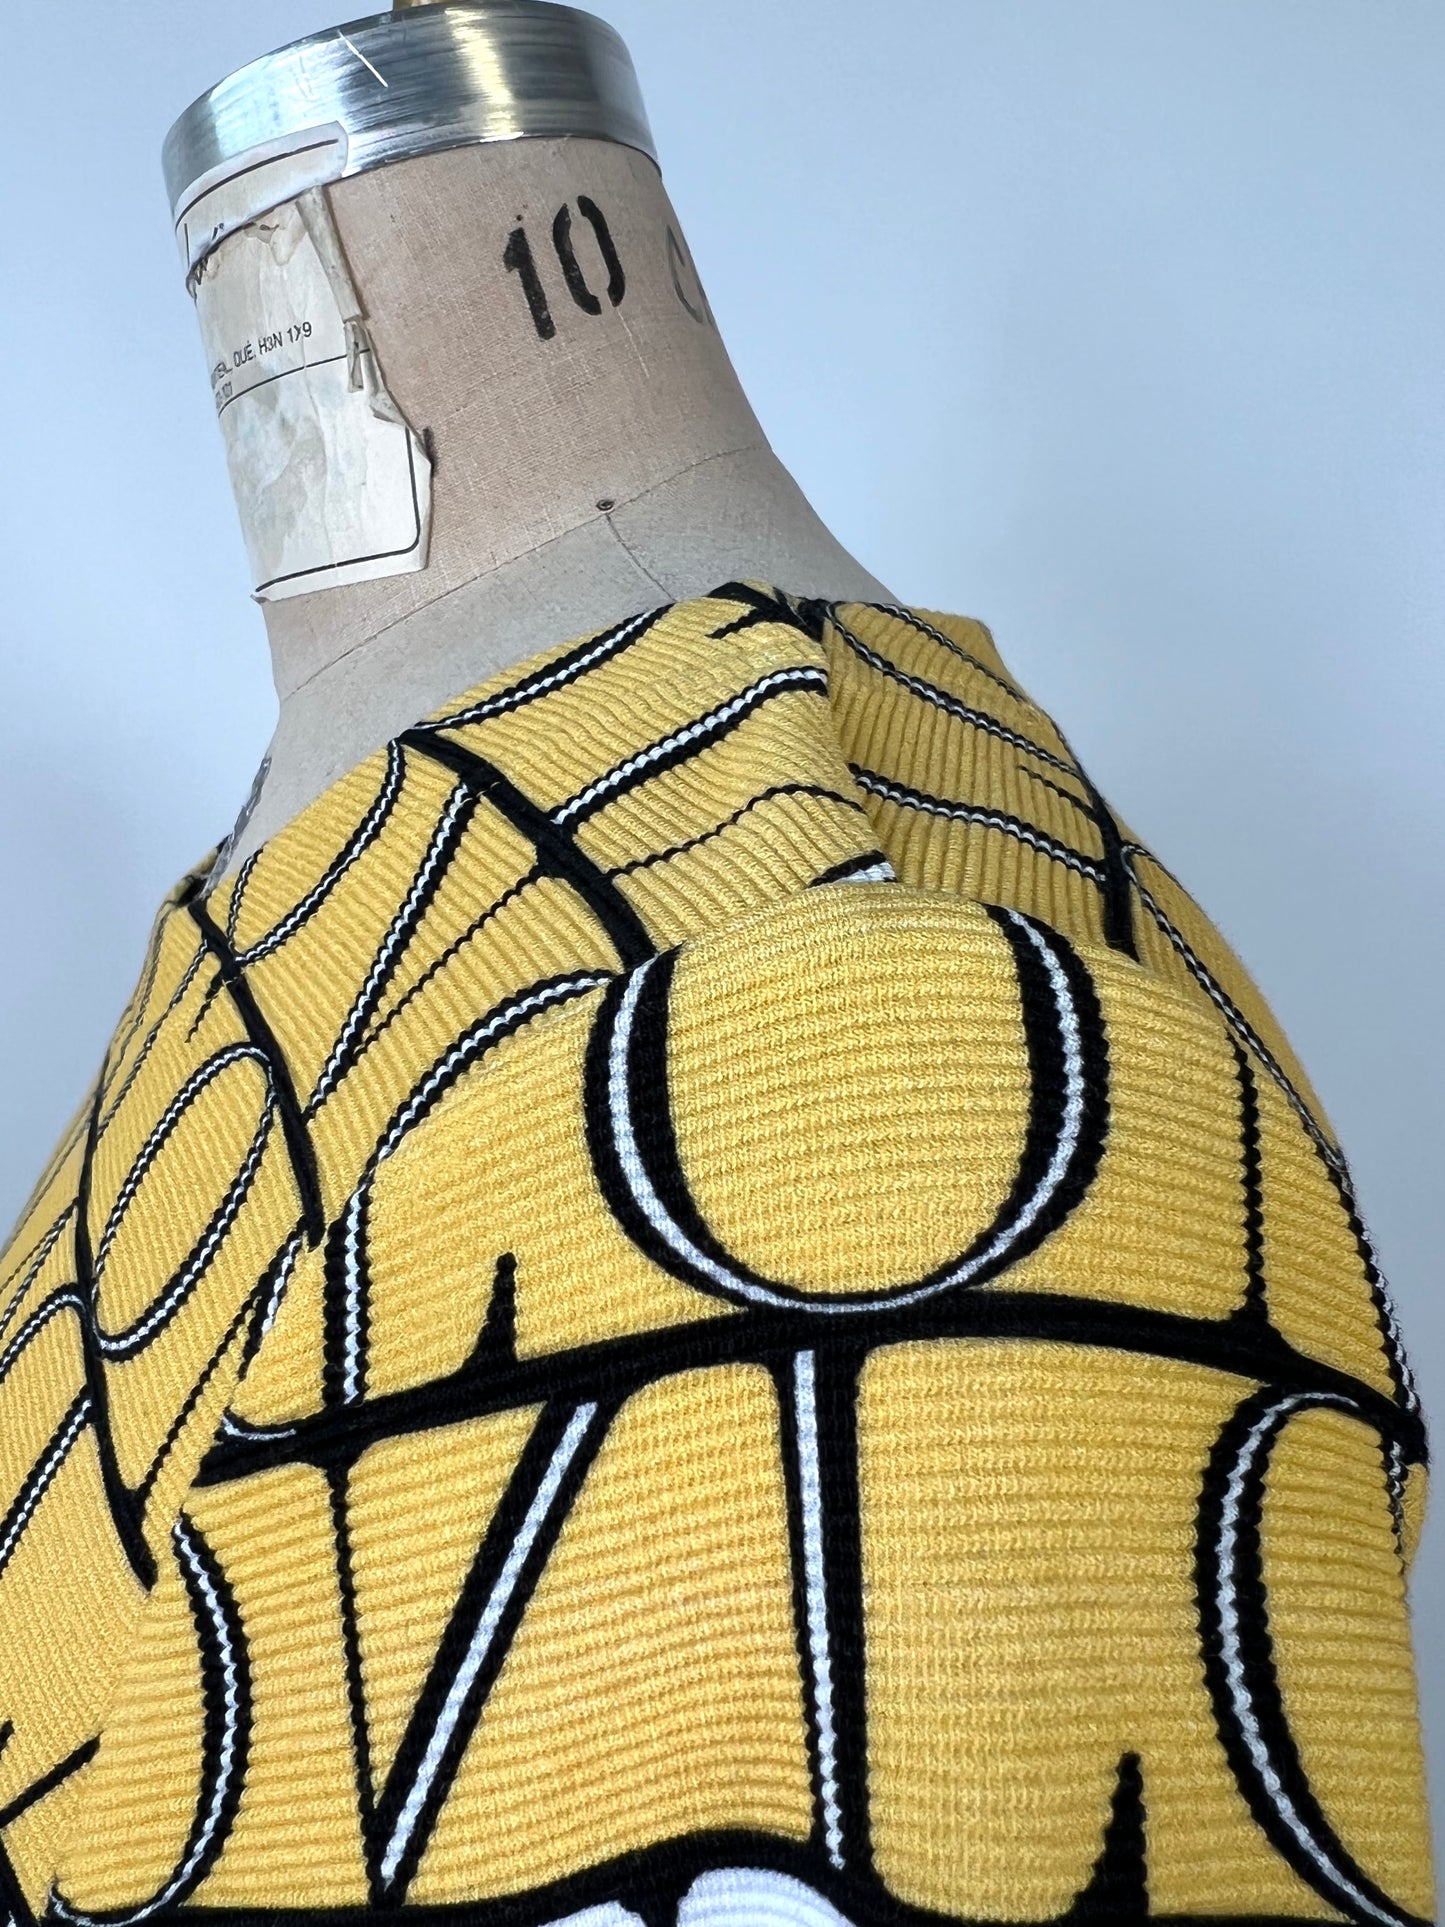 Chandail jaune à imprimé lettrages et graphique à texture gaufrée (10)